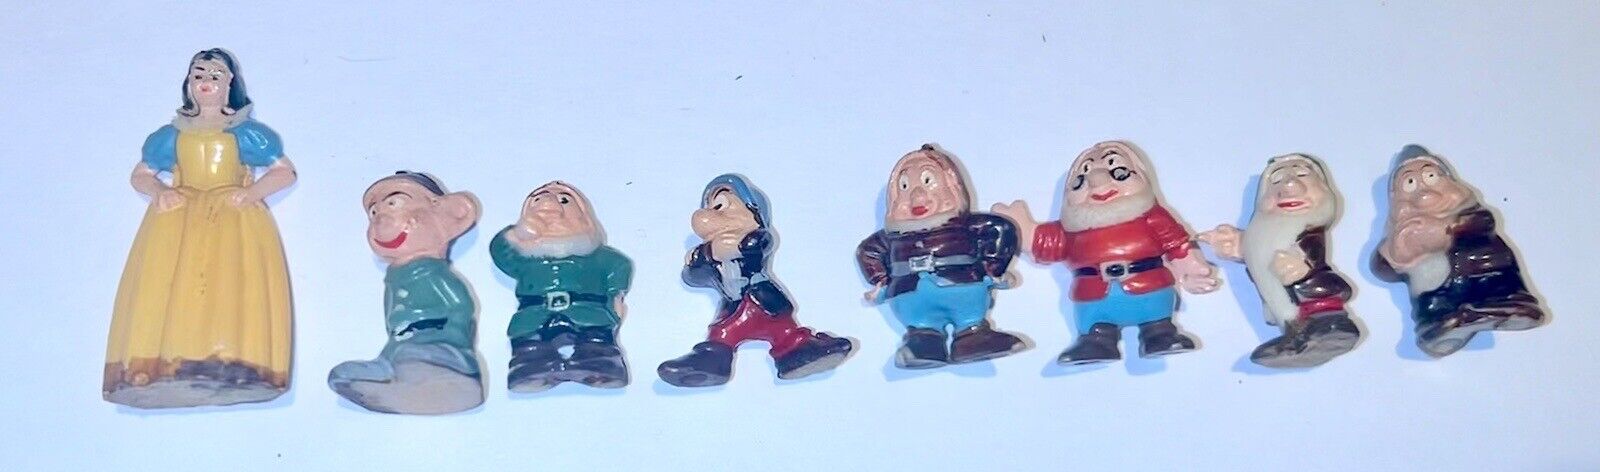 Louis Marx Disneykins Snow White And The Seven Dwarfs Tinykins 1961 Vintage